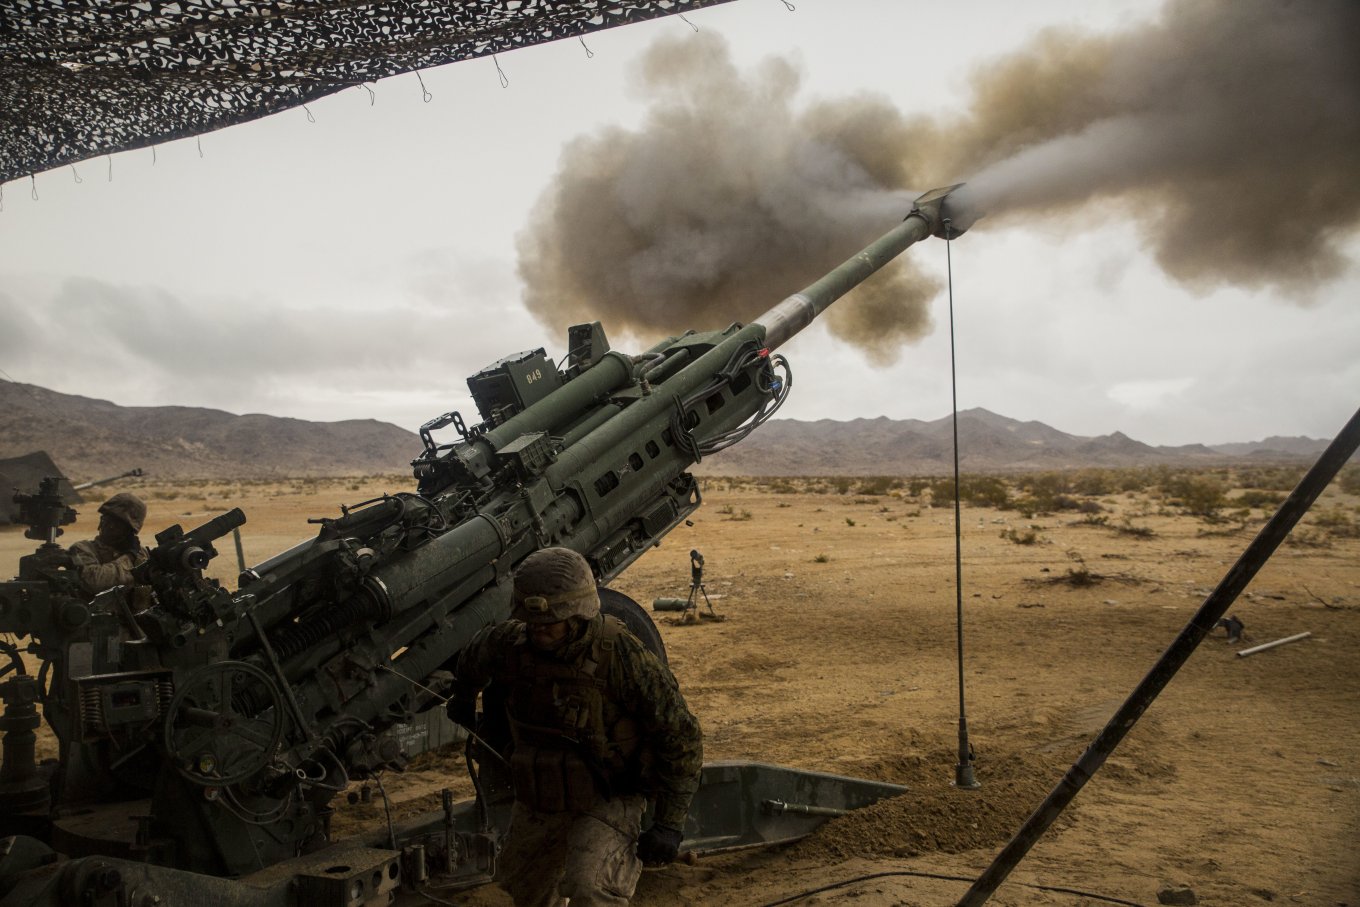 Over 50 units M777 Towed Howitzers in Ukraine, Next HIMARS or M270 – Washington Post, Defense Express, war in Ukraine, Russian-Ukrainian war